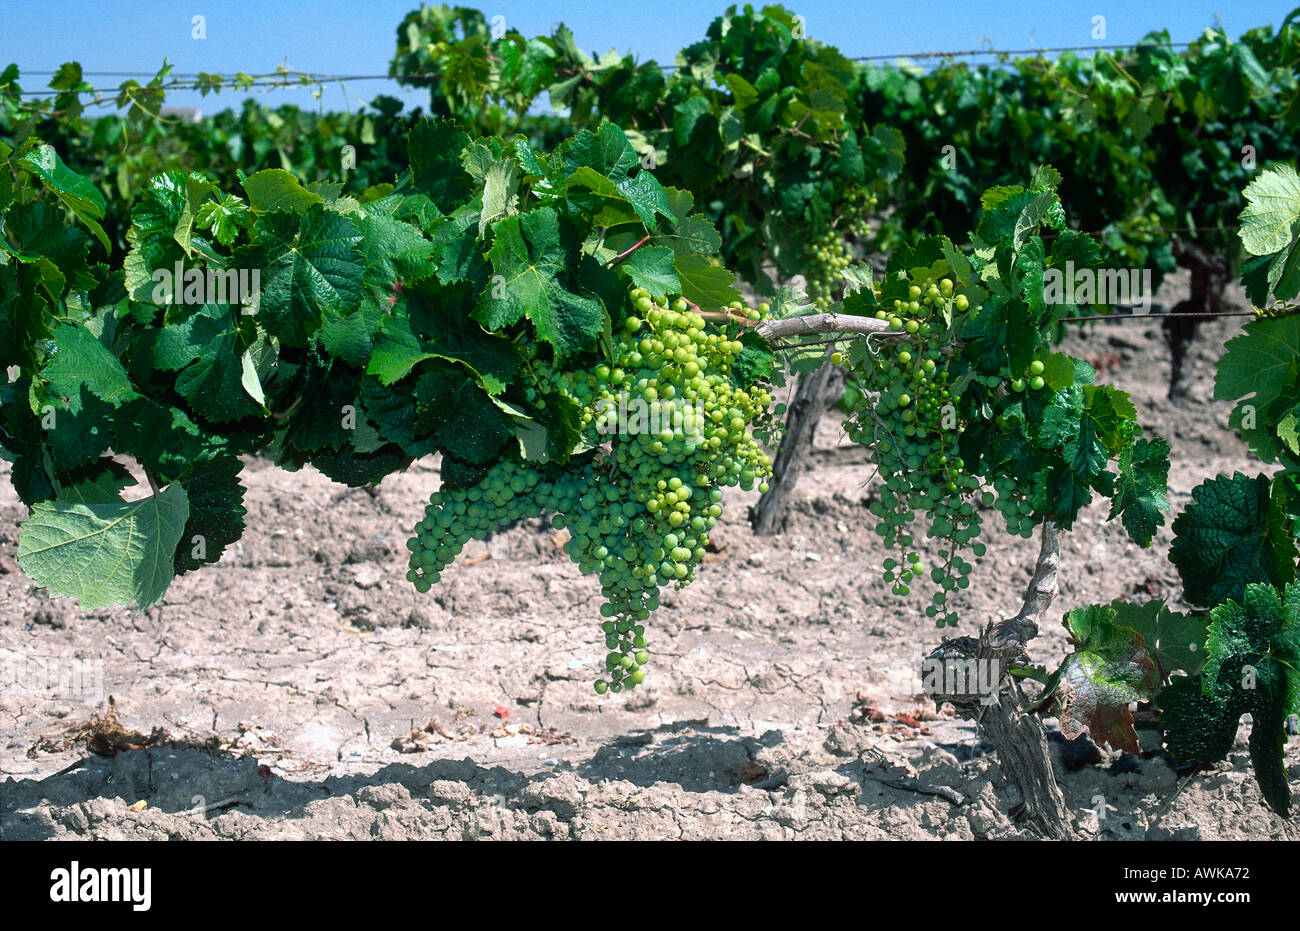 Plantation de raisins sur le paysage, Jerez de la Frontera, Andalousie, Espagne Banque D'Images